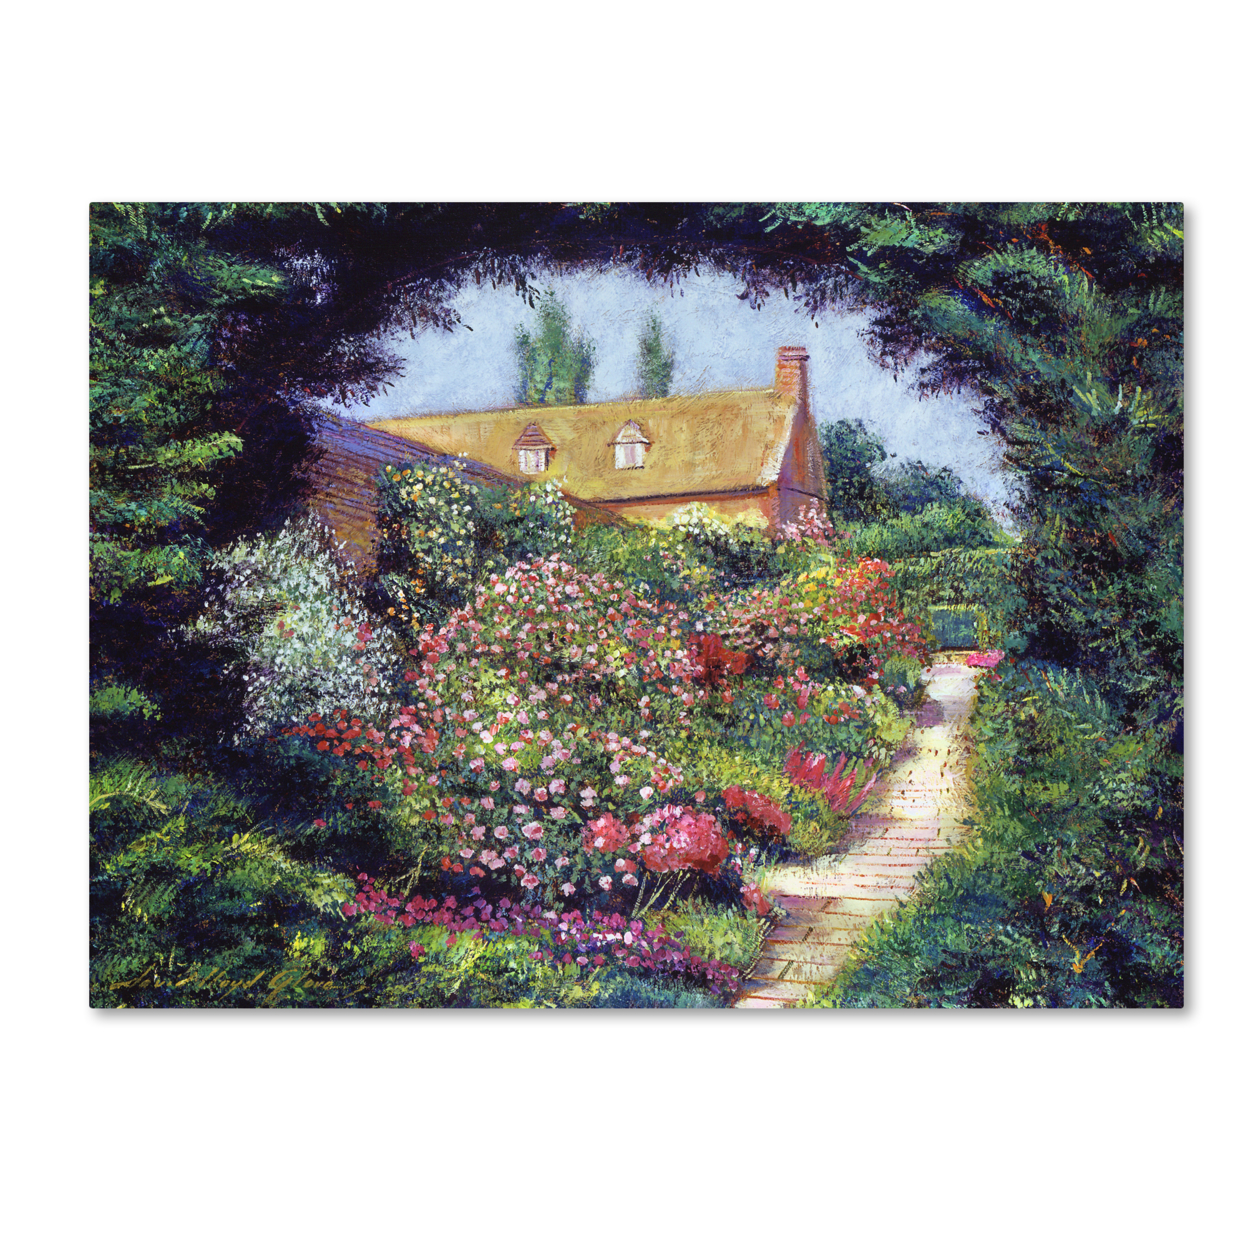 David Lloyd Glover 'English Garden Stroll' Canvas Wall Art 35 X 47 Inches